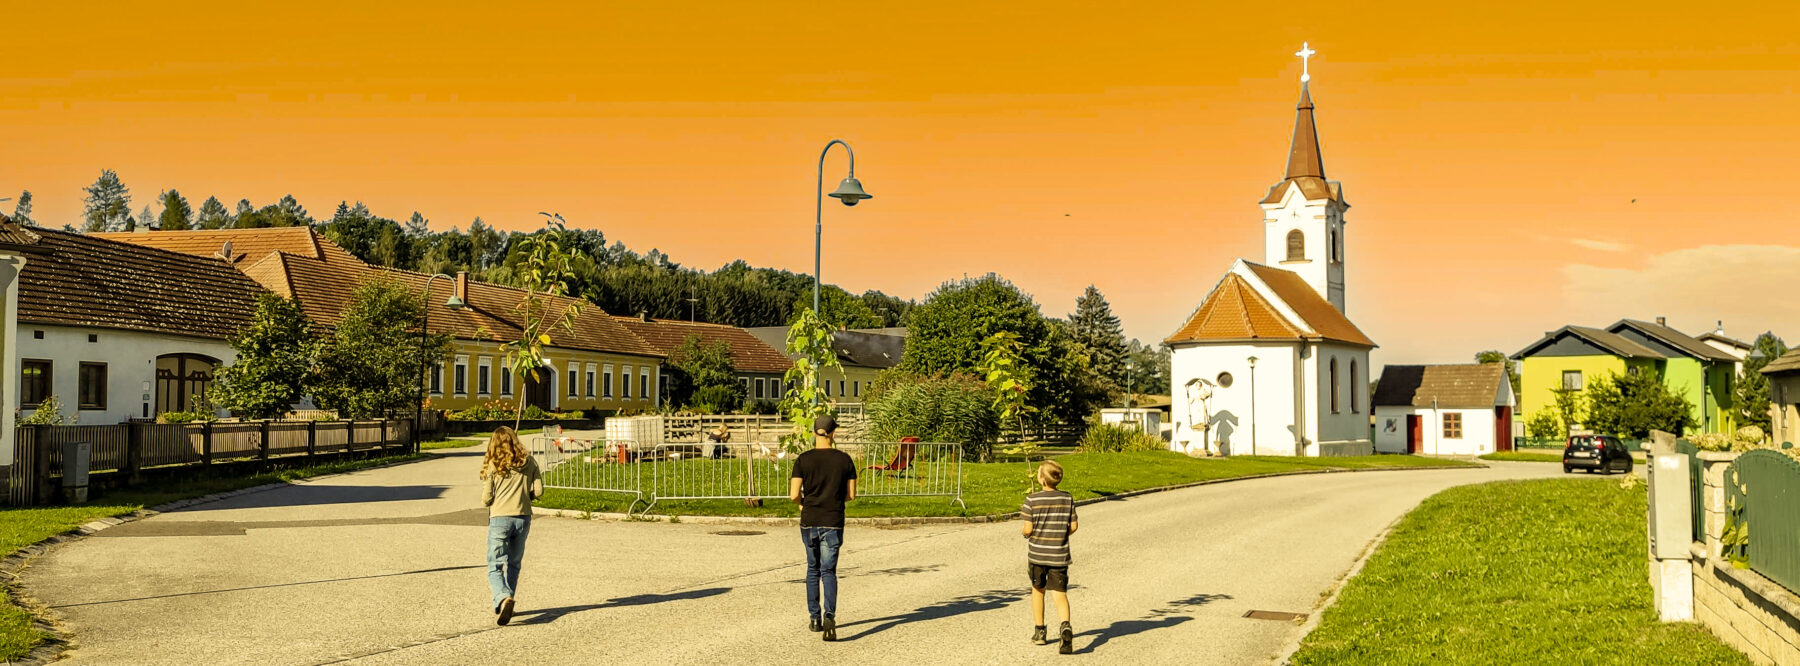 Außilahna und Hoamkema - Das Titelbild der Projektwebseite mit unserem Dorfplatz in Orange.